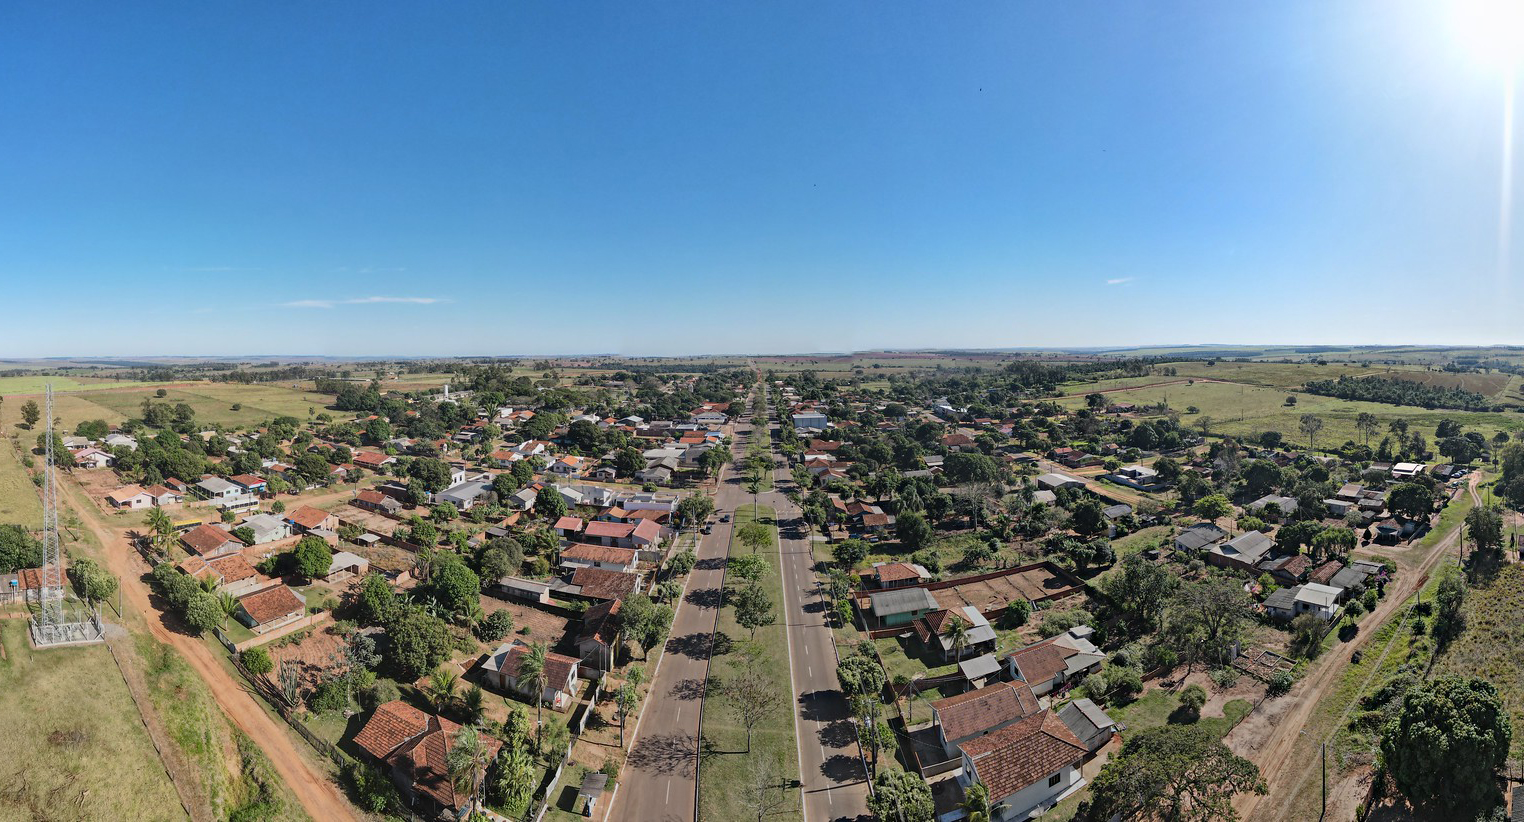 imagem aérea do distrito, mostrando ruas e casas